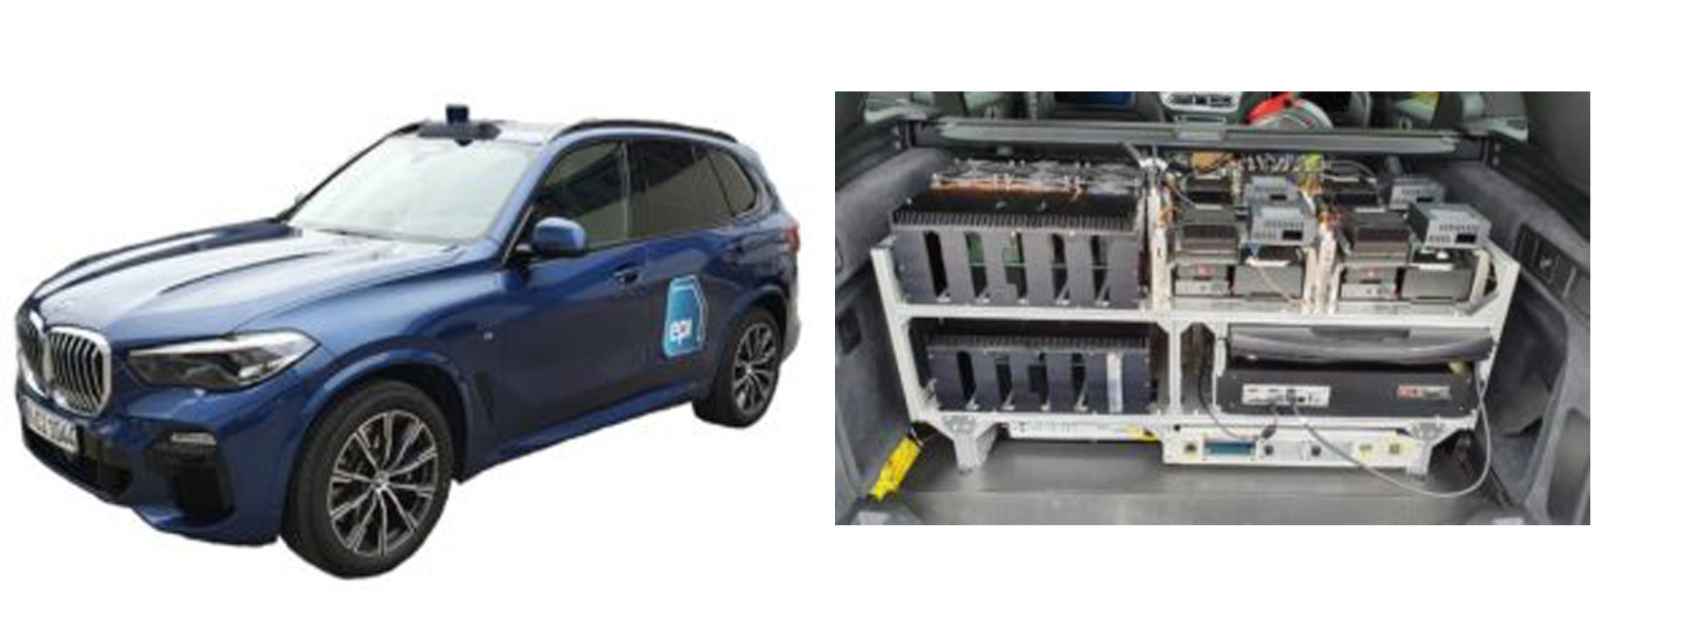 Coche de pruebas BMW X5 y el sistema informático EPI en el bastidor.